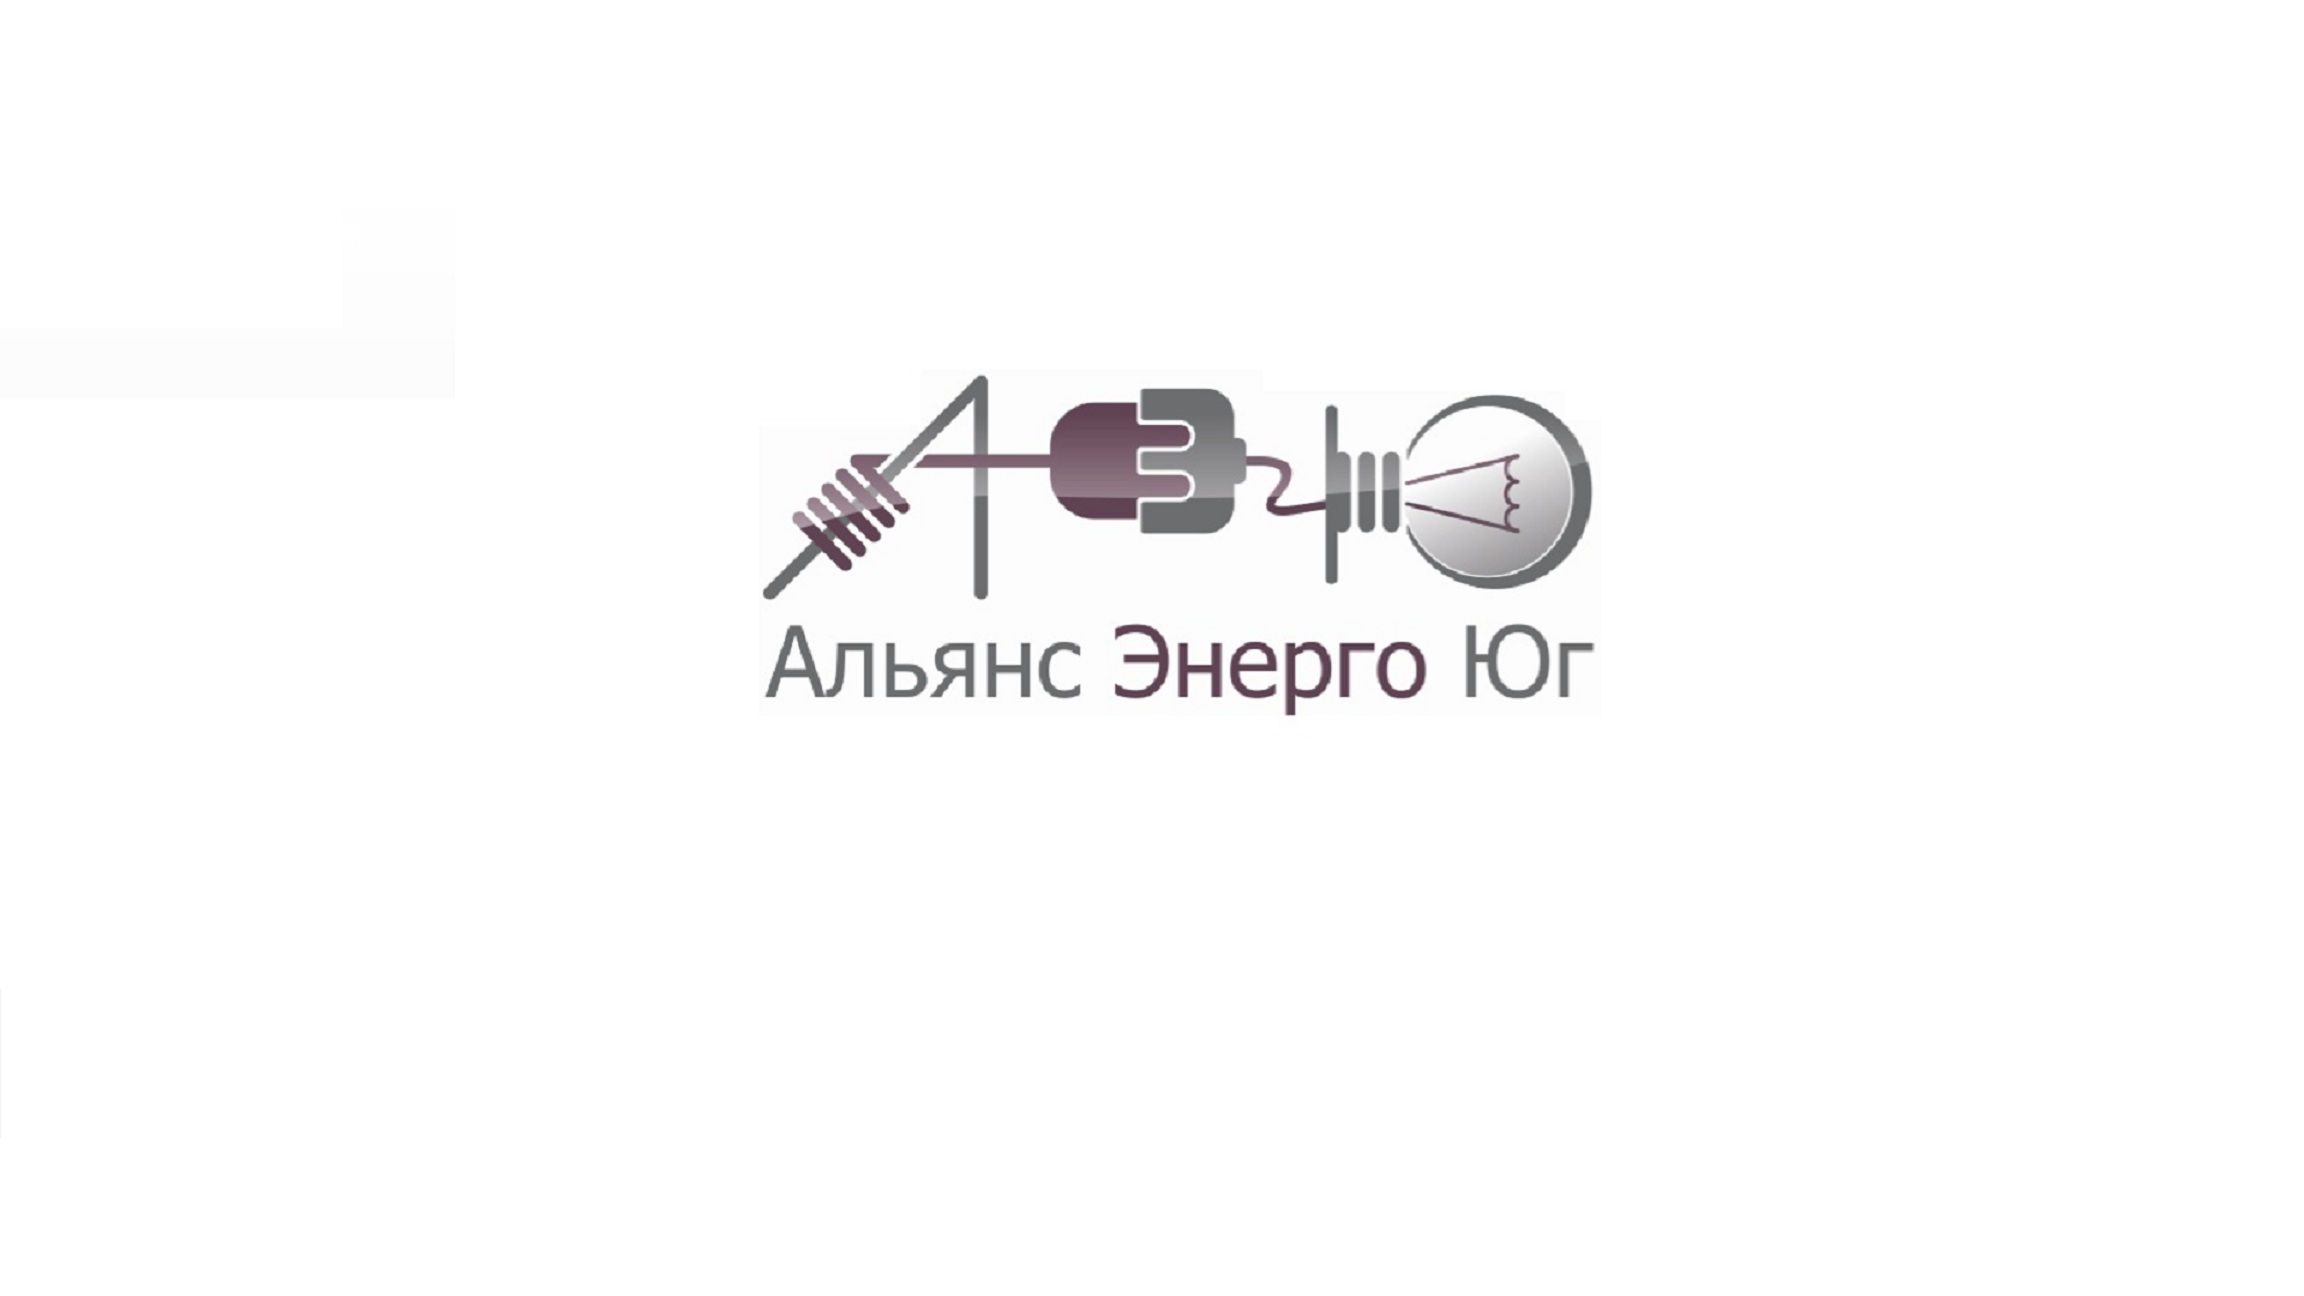 Логотип компании АльянсЭнергоЮг